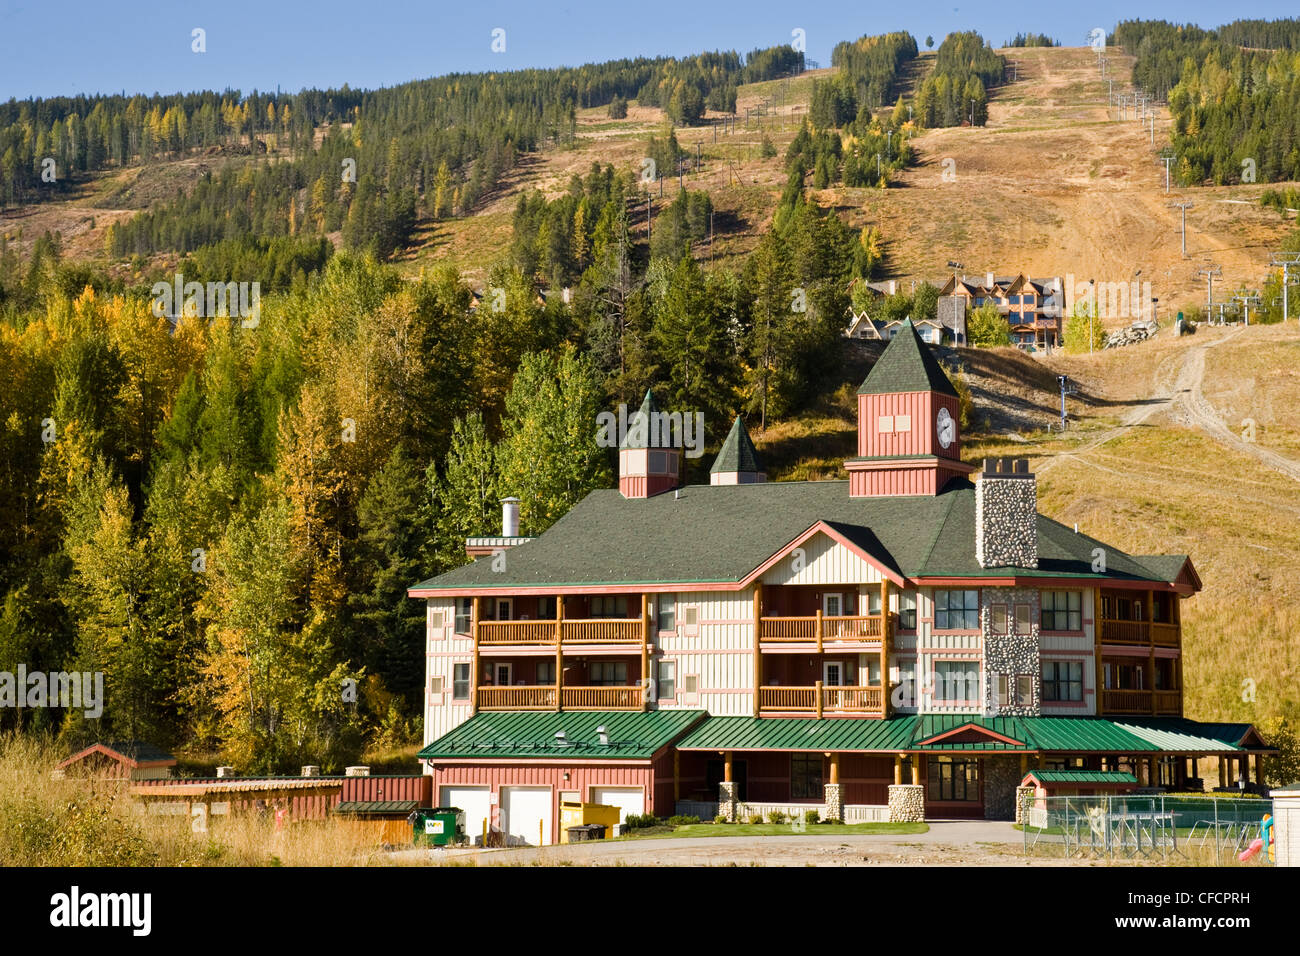 Kimberley Alpine Resort, Kimberley, British Columbia, Canada Stock Photo